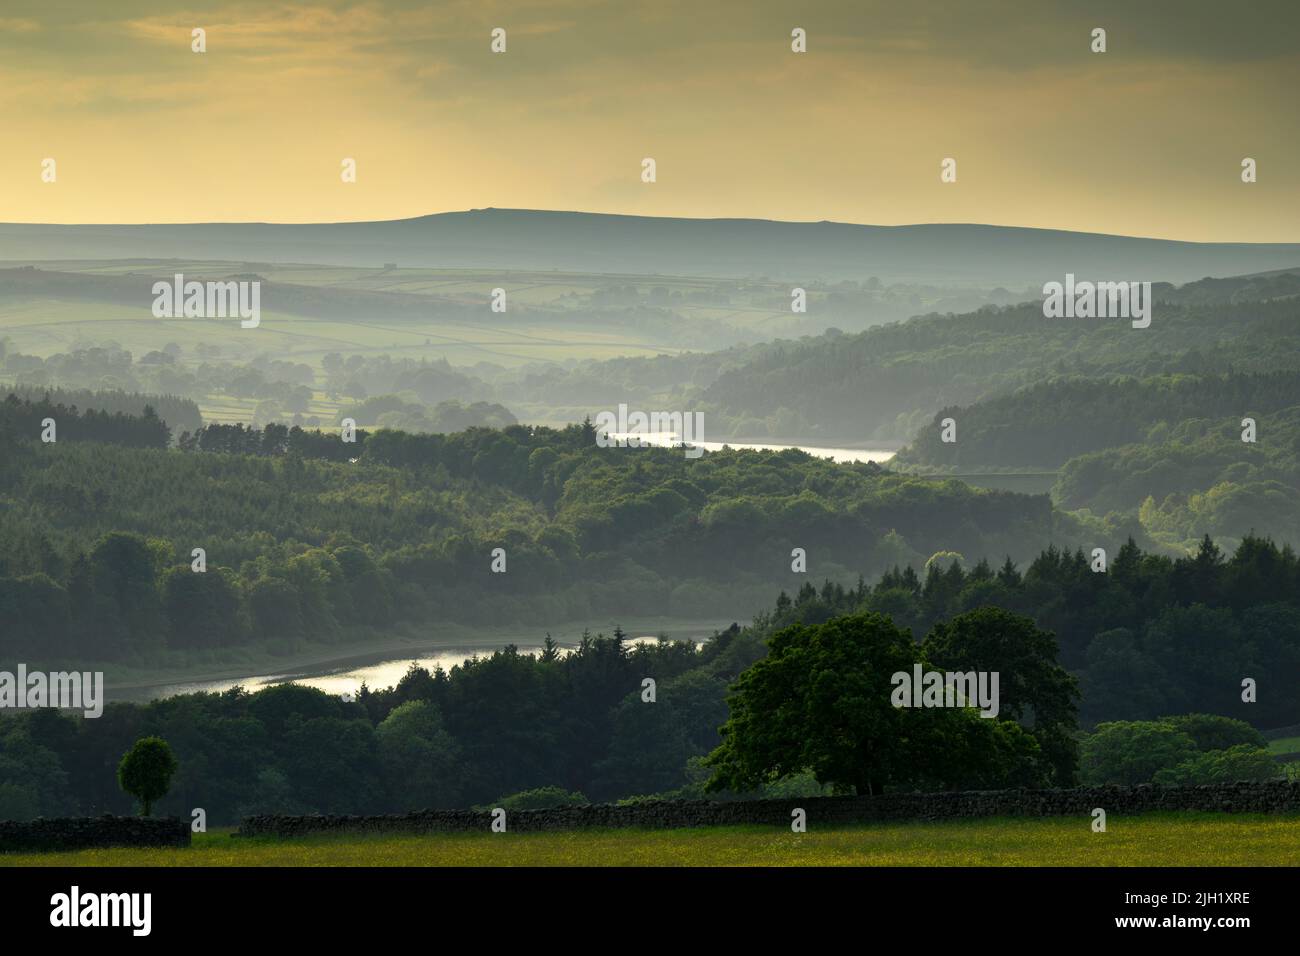 Vista panoramica a lunga distanza della sera pastorale estiva (colline boscose, piantagione di foreste, colline ondulate, cielo colorato) - Washburn Valley, Inghilterra Regno Unito. Foto Stock